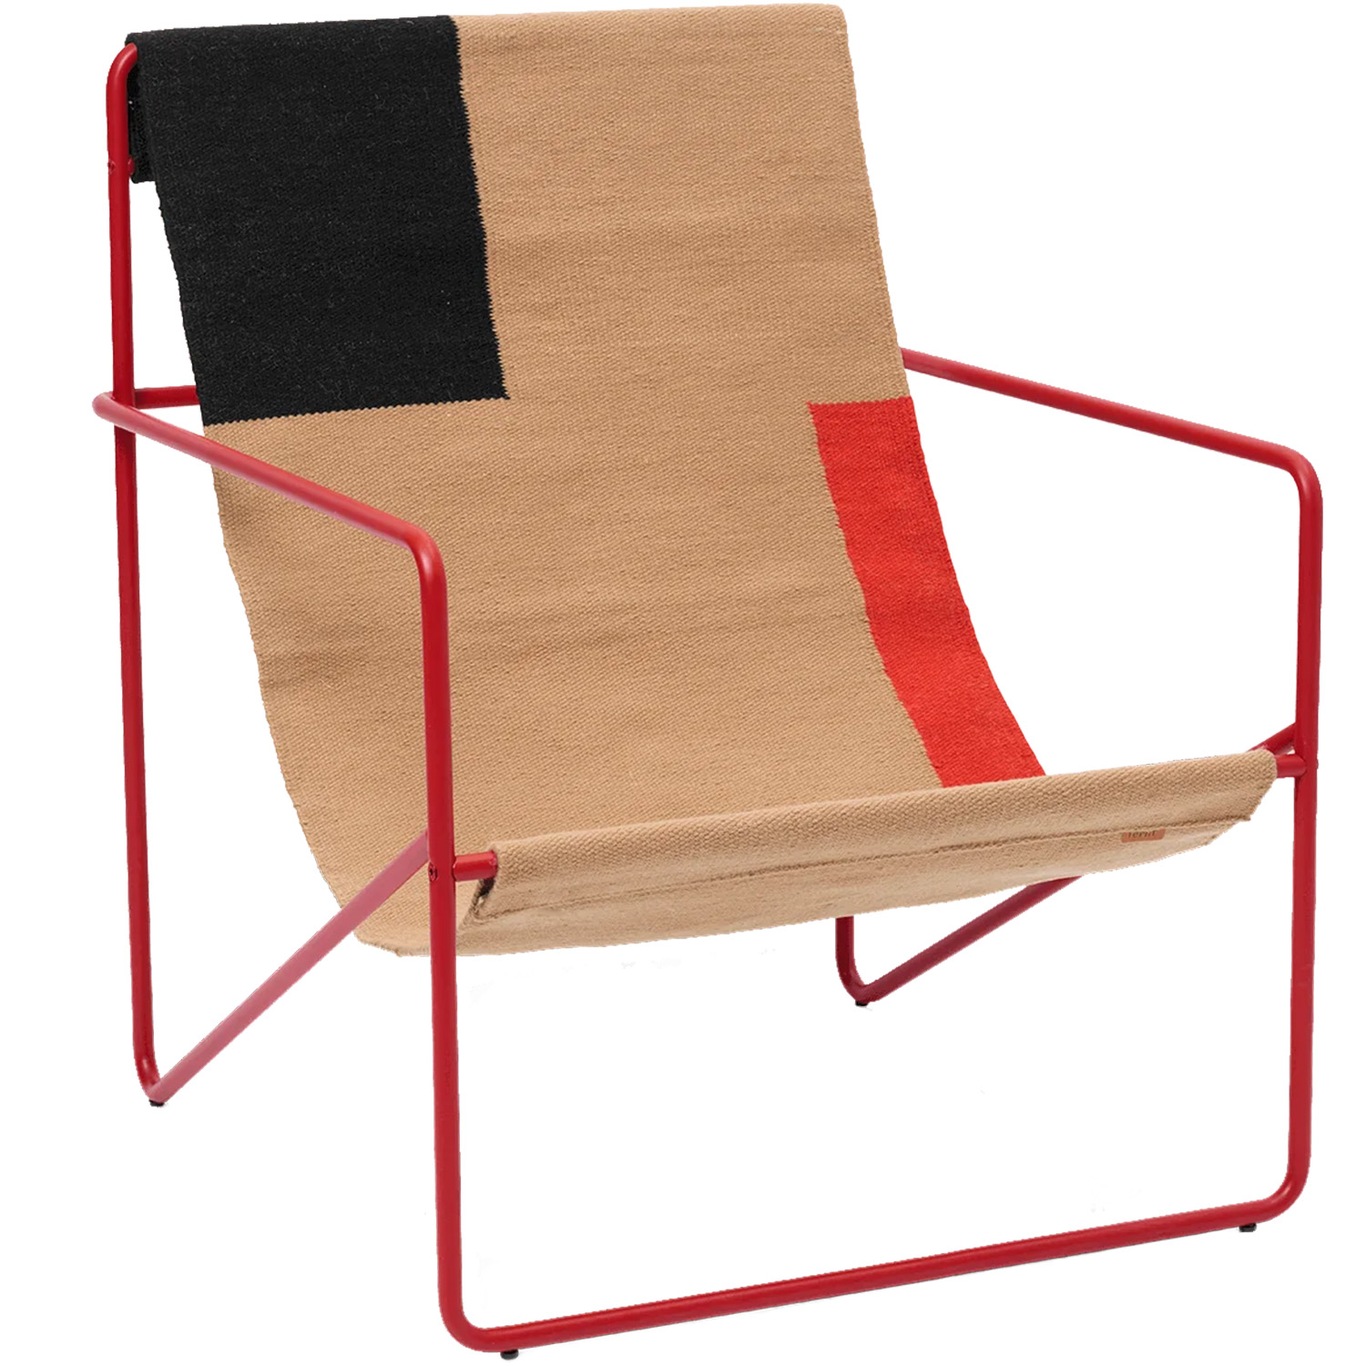 Desert Lounge Stuhl, Poppy Red / Block